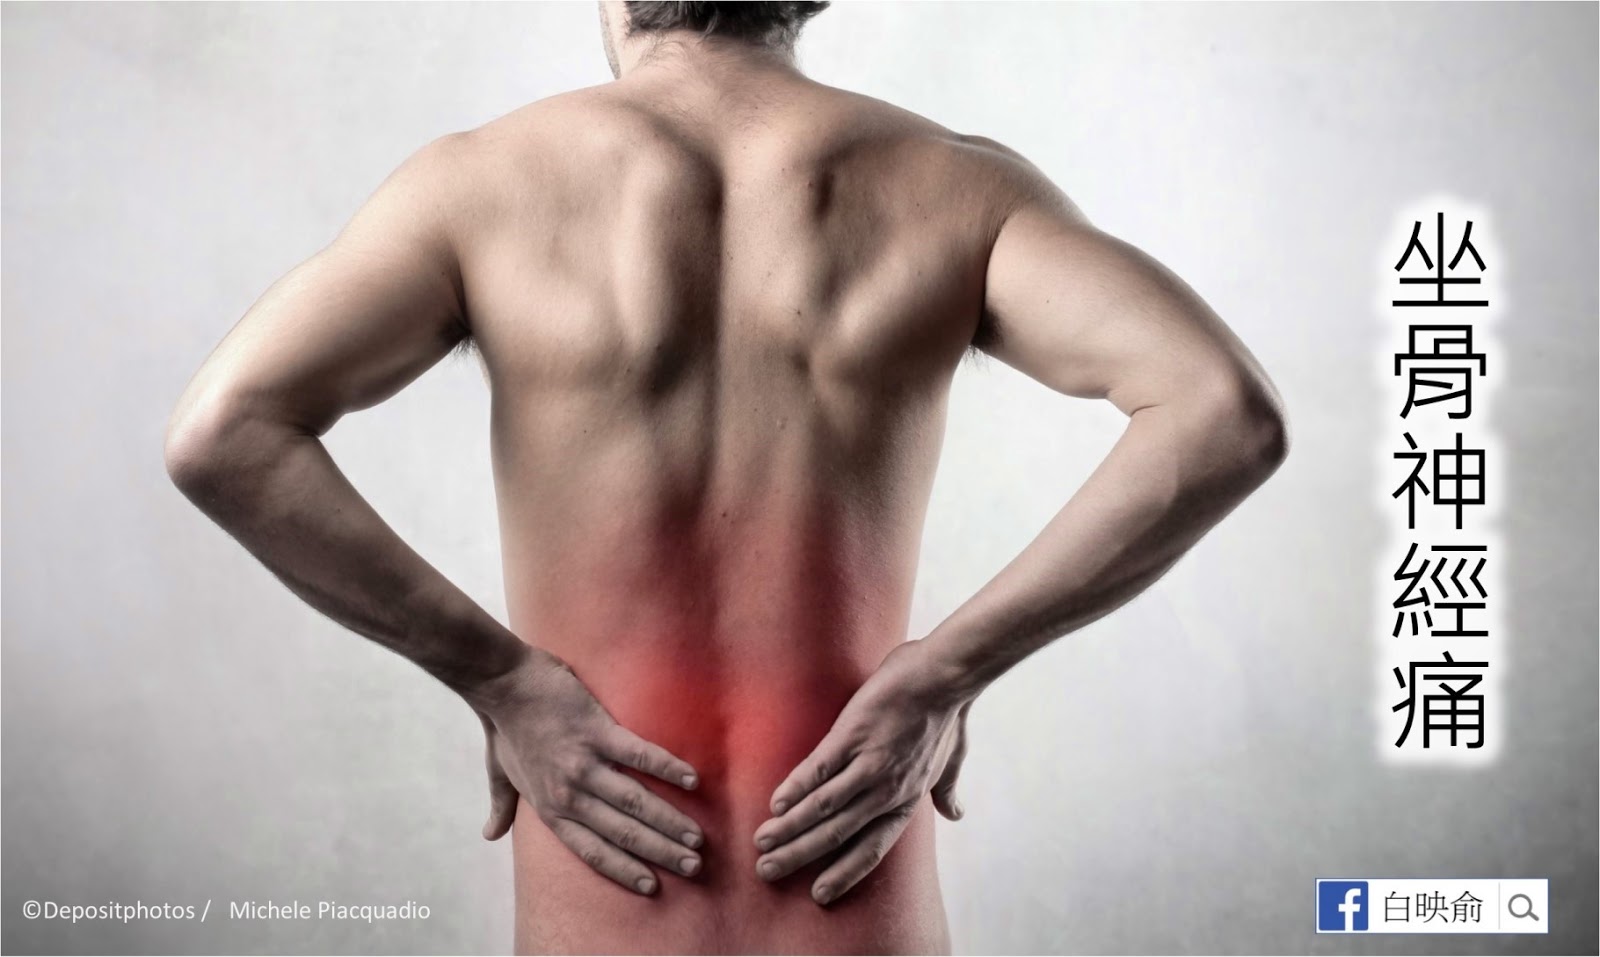 Поясница где. Поясница. Воспалительная боль в спине. Спина человека. Картинка спины человека.